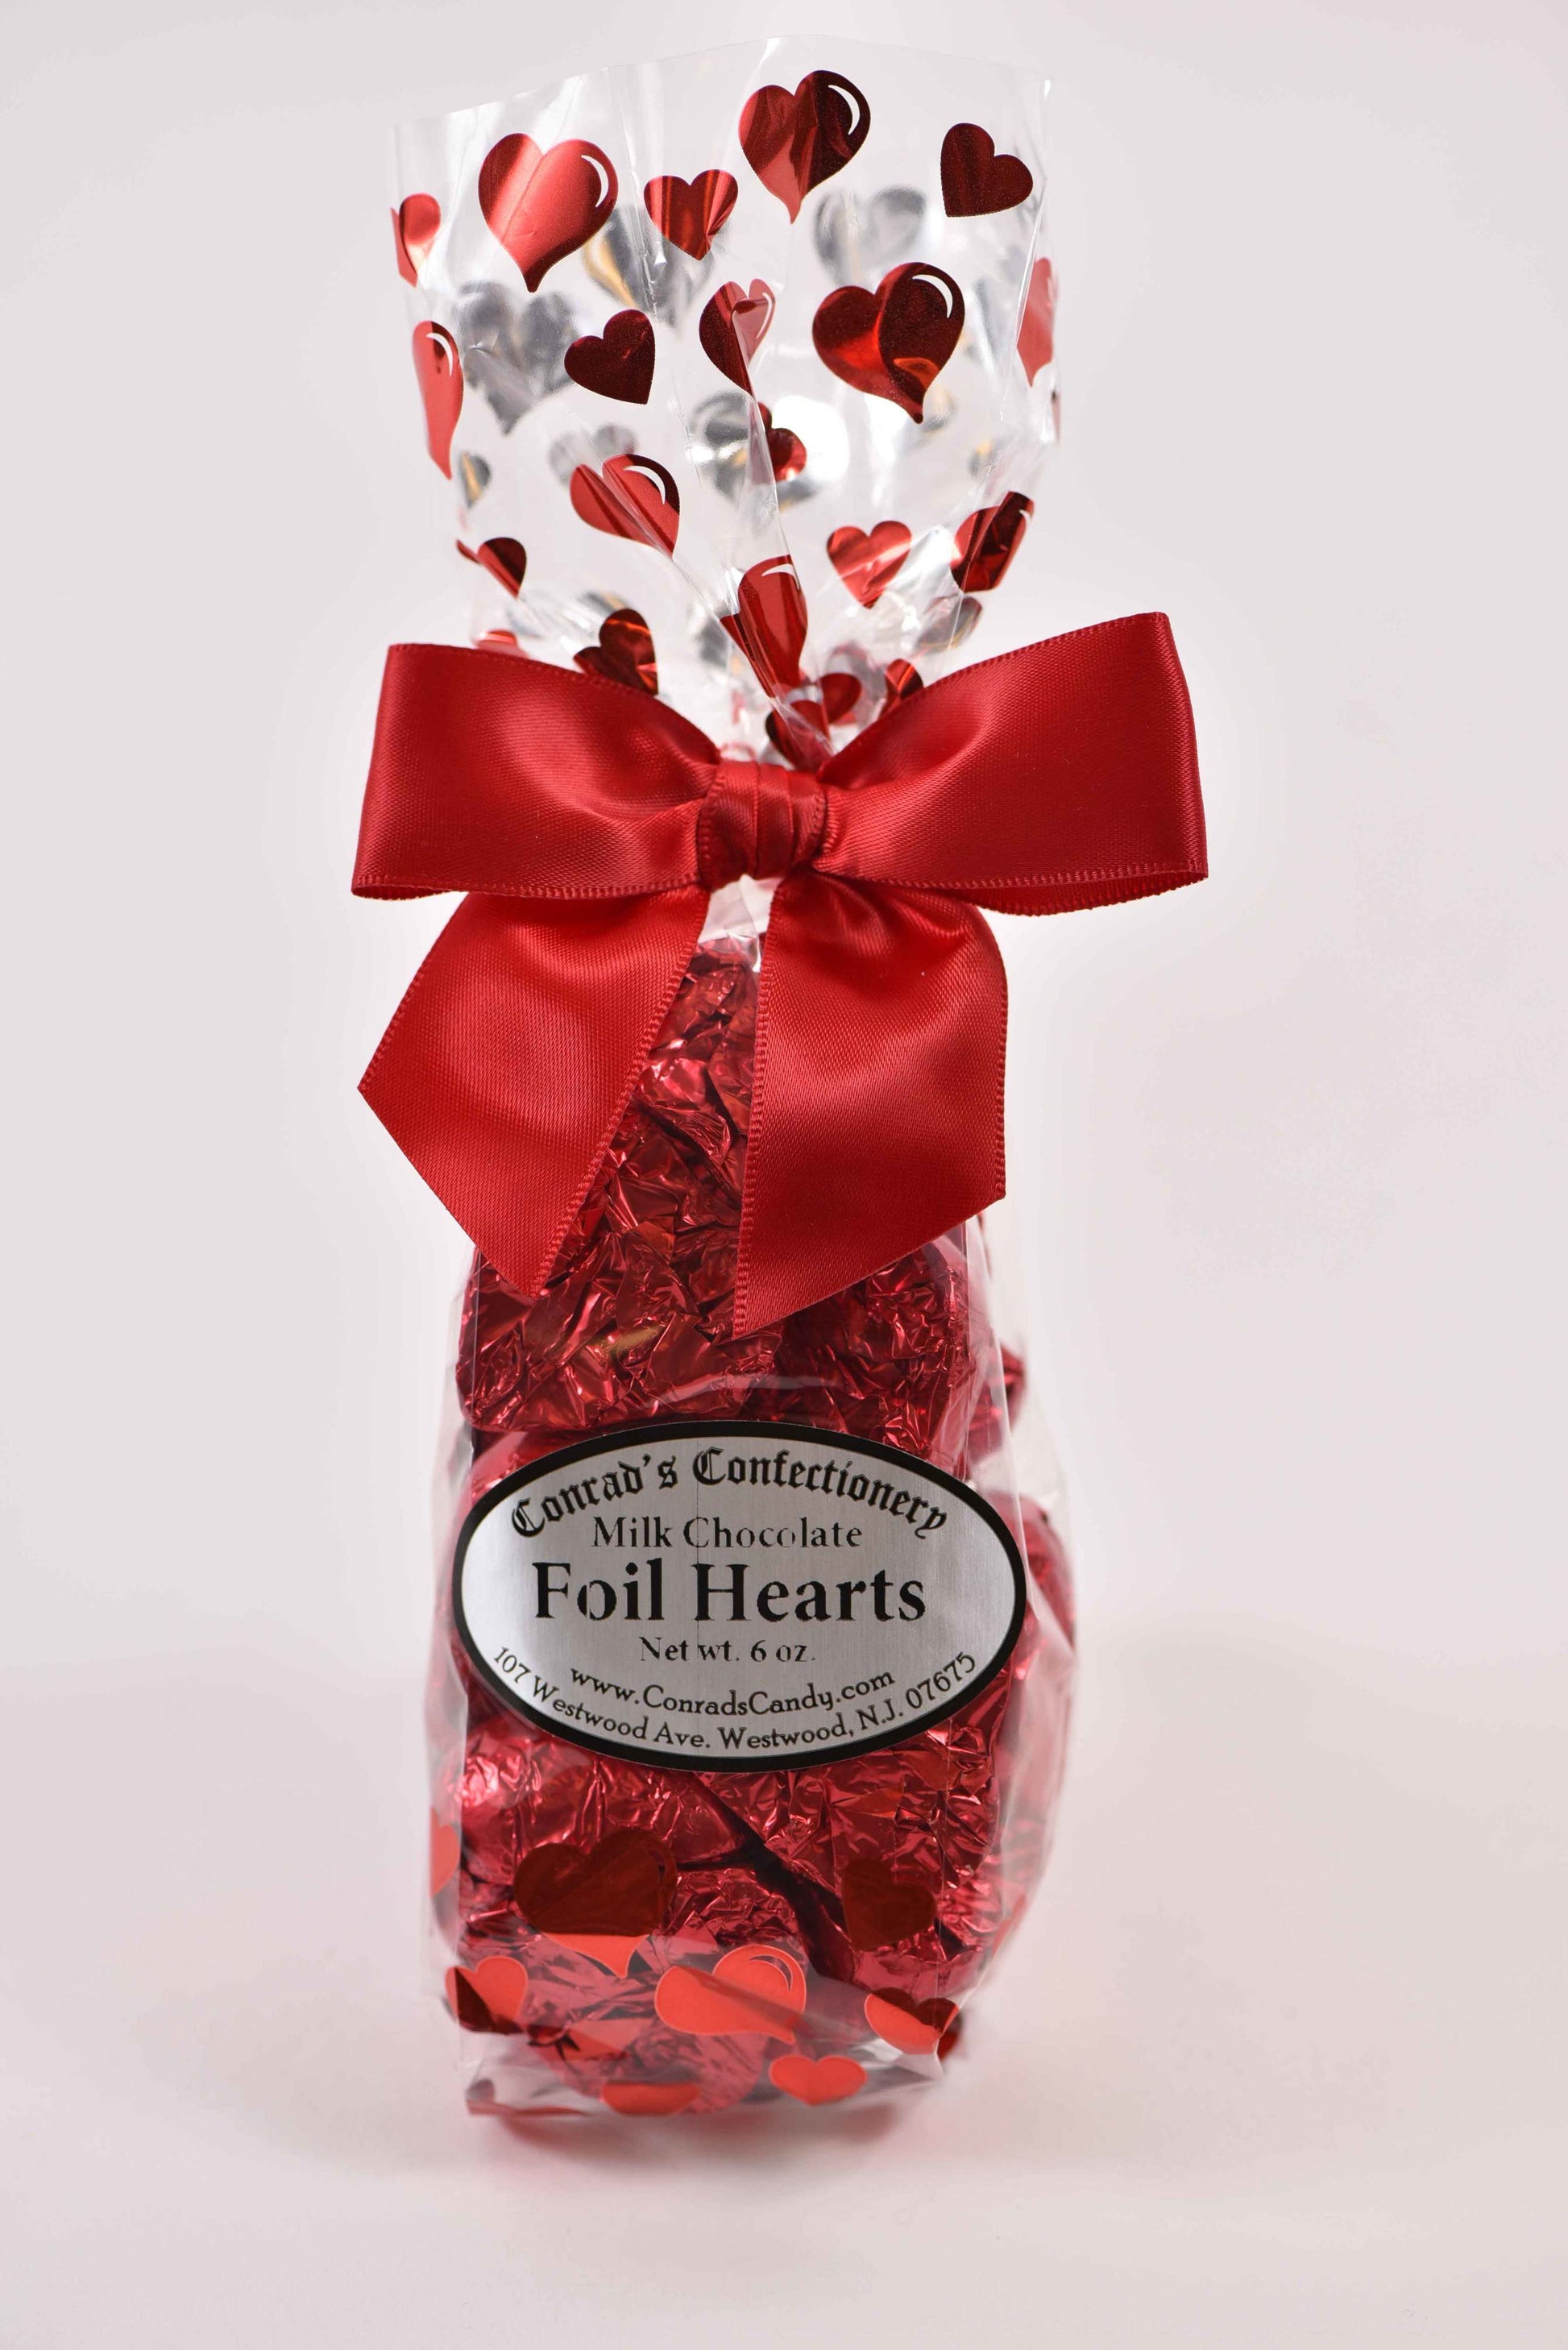 Milk Chocolate Foil Hearts (6oz) - Conrad's Confectionery